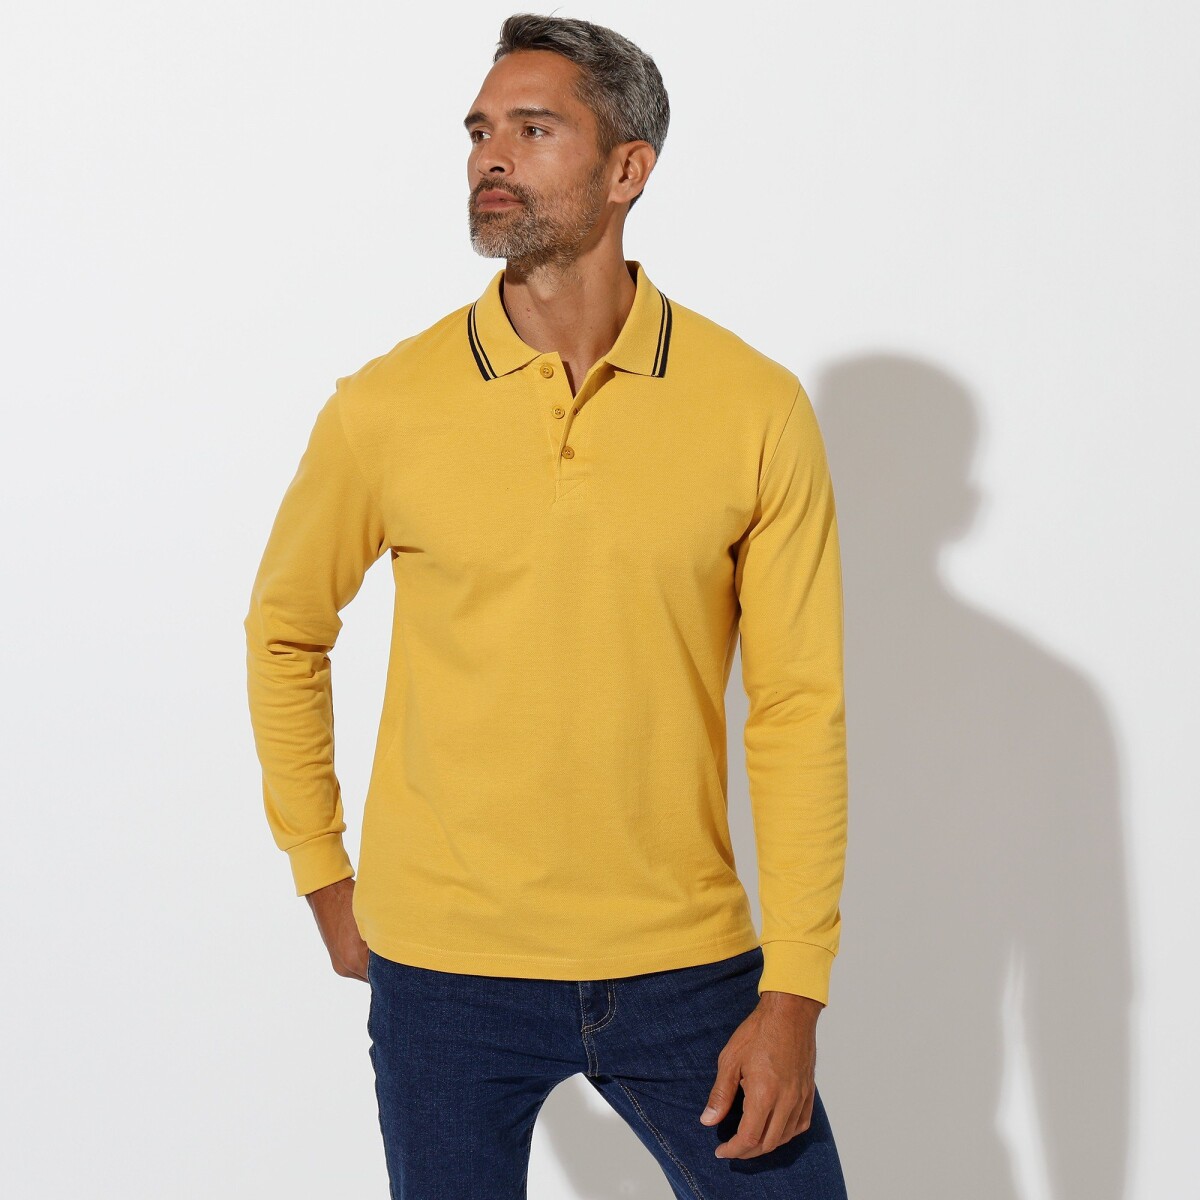 Polo tričko s prúžkom na golieri s dlhými rukávmi žltá 97 106 (L)